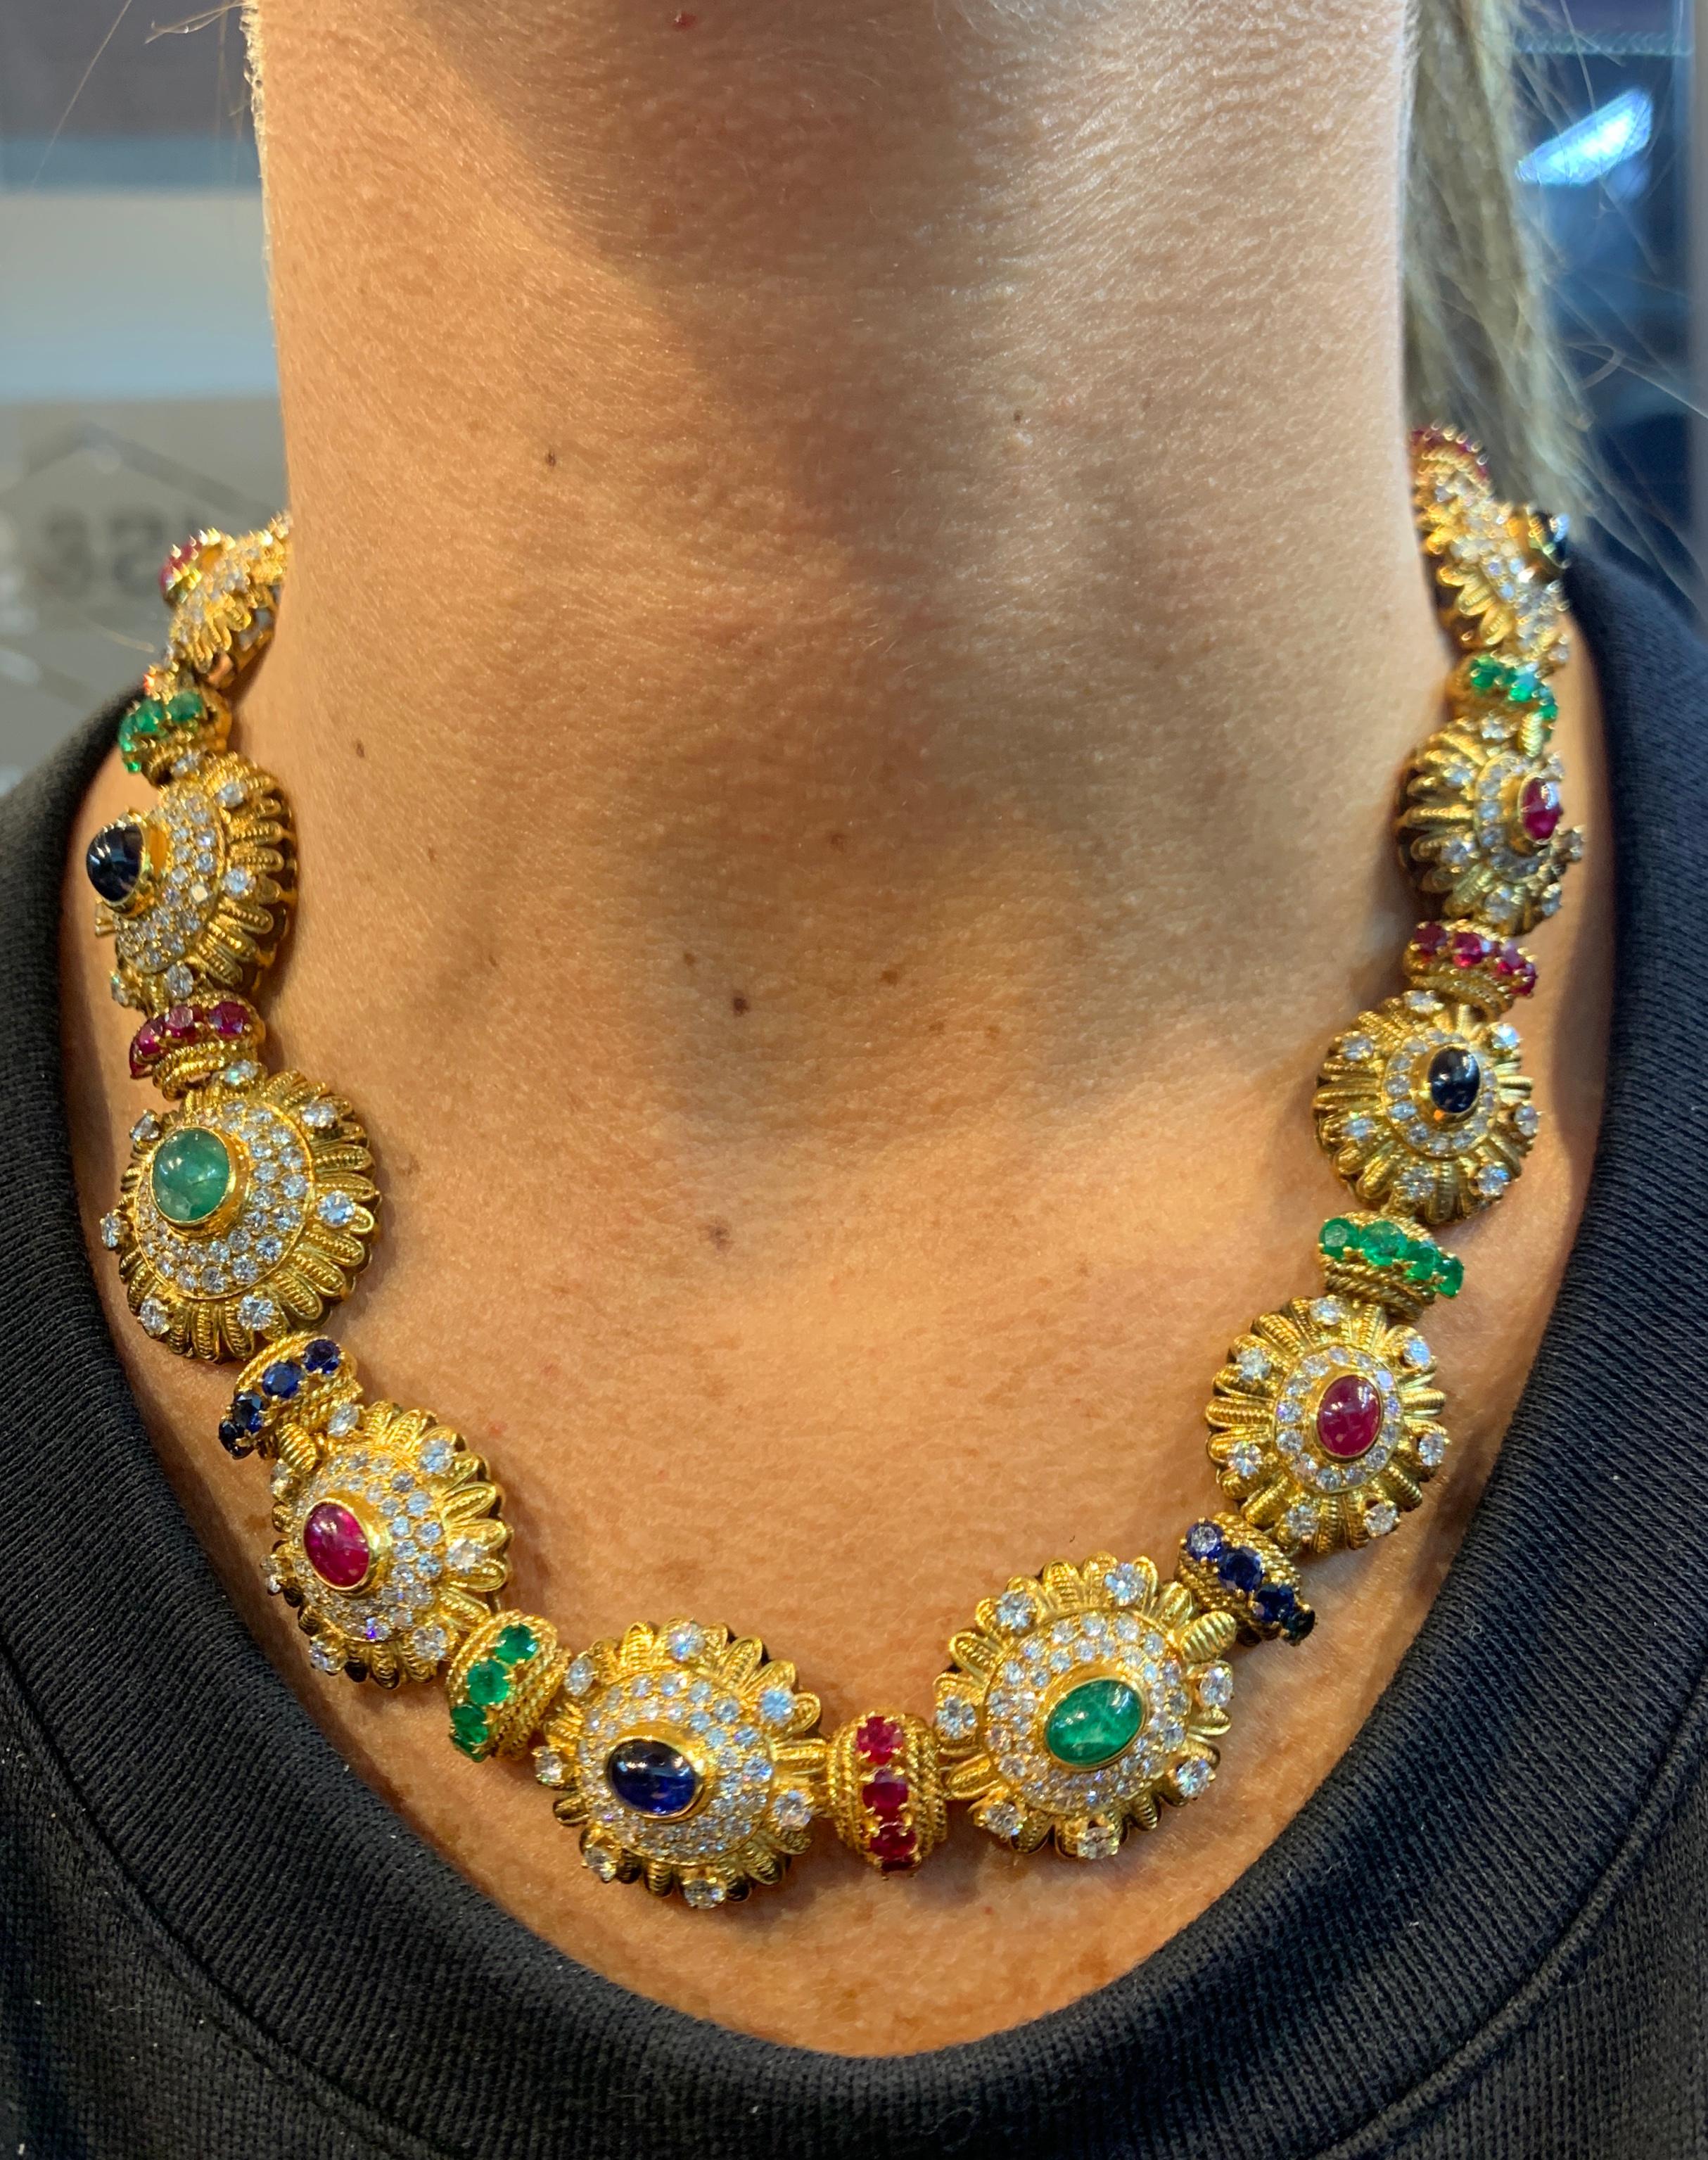 Royal Multi Gem Necklace and Bracelet Set Made by Van Cleef & Arpels 5